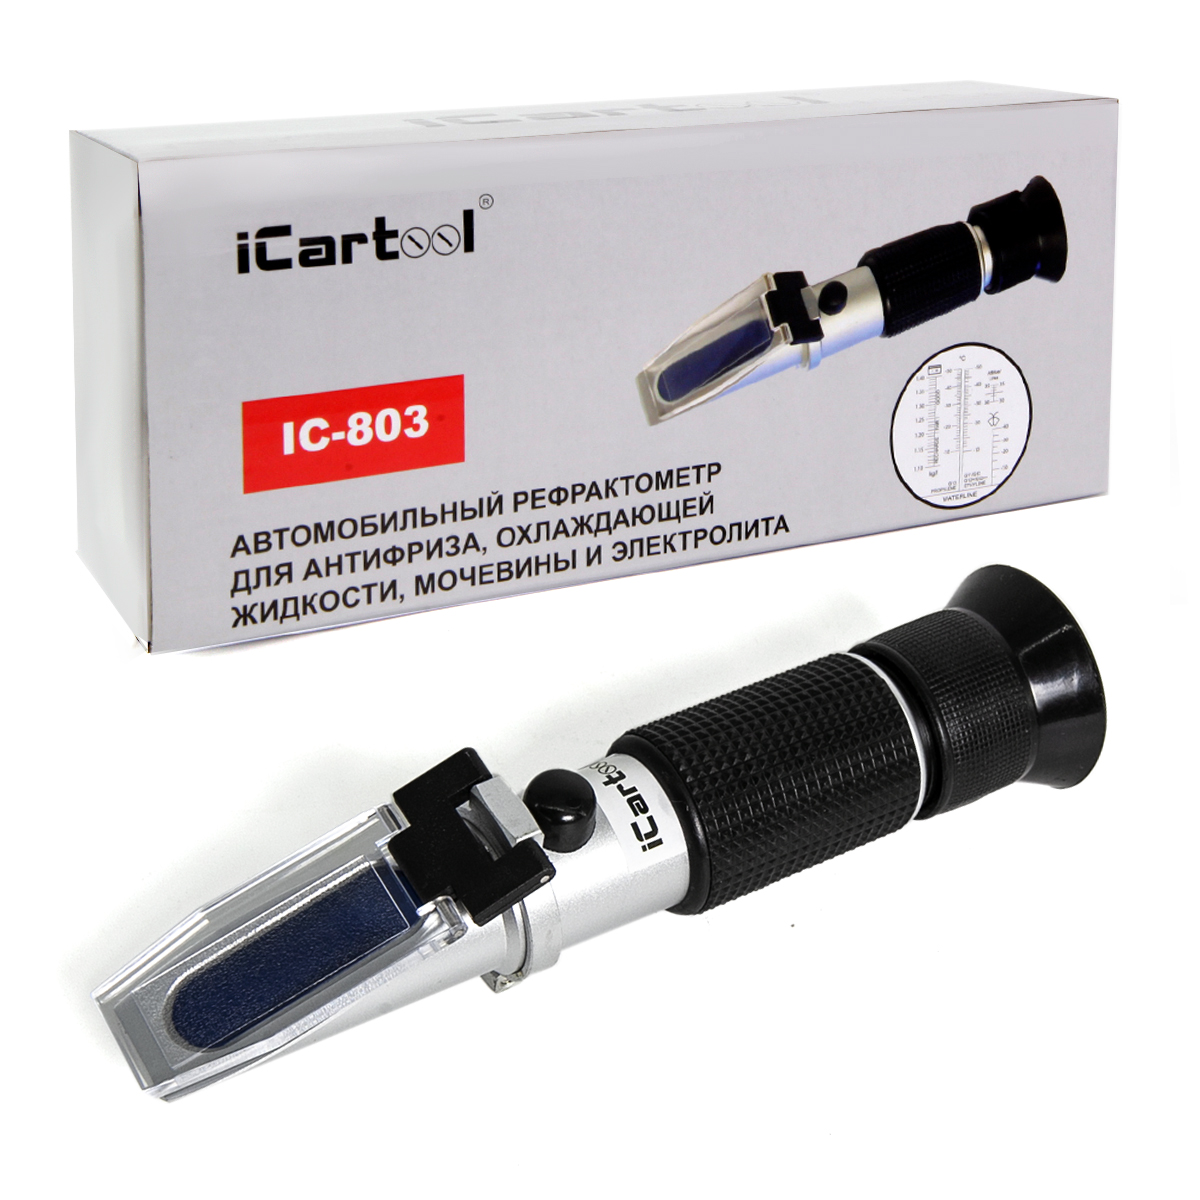 iCartool Автомобильный рефрактометр для антифриза и охлаждающей жидкости и электролита. IC